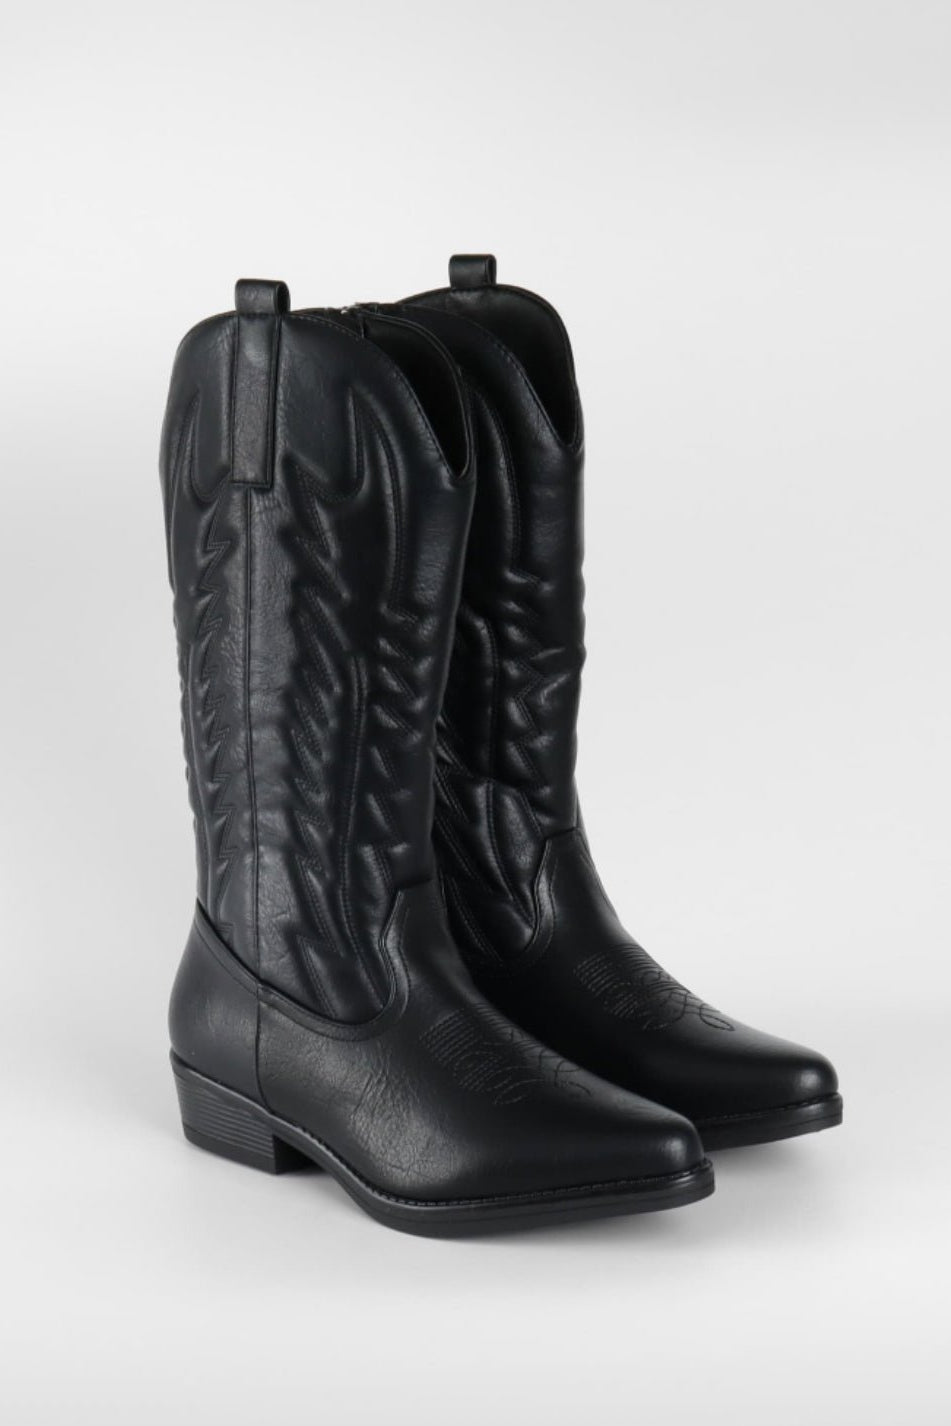 Cowboy Boots Black -